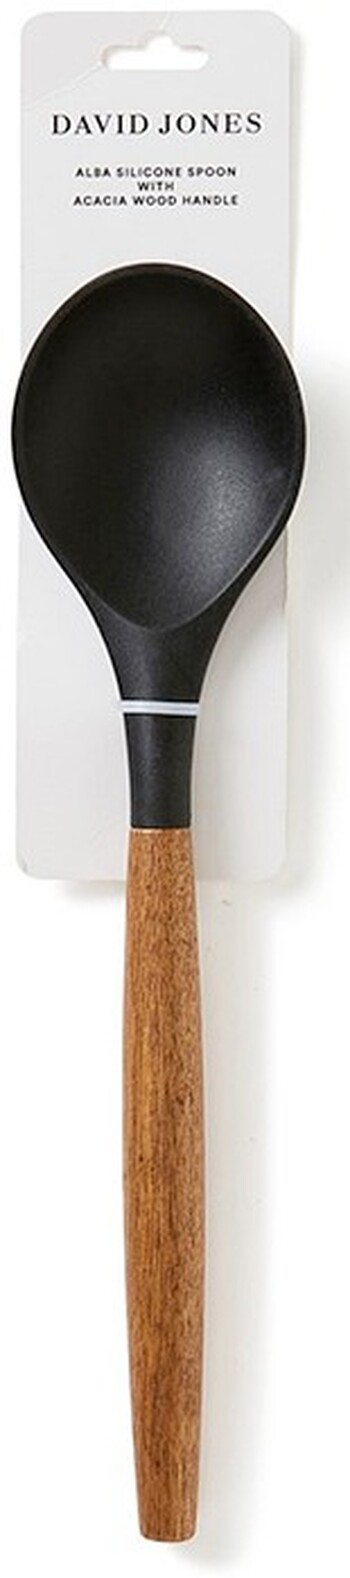 David Jones Collection ‘Alba’ Silicone Spoon with Acacia Wood Handle